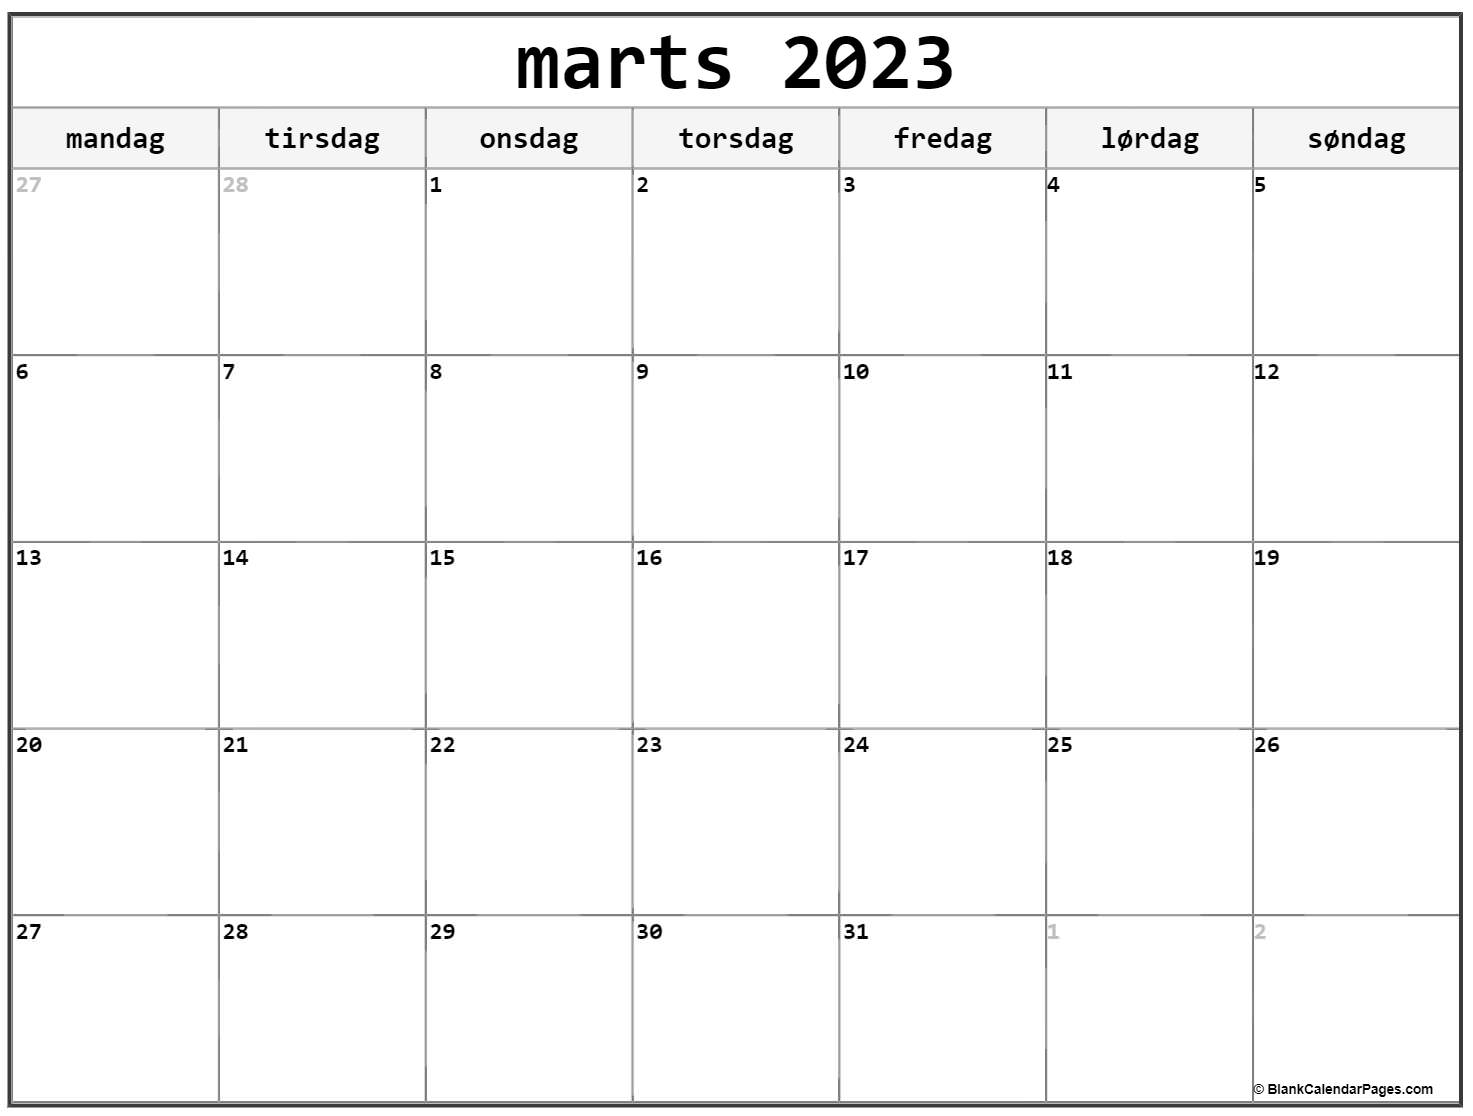 Marts 2023 Kalender Dansk Kalender Marts